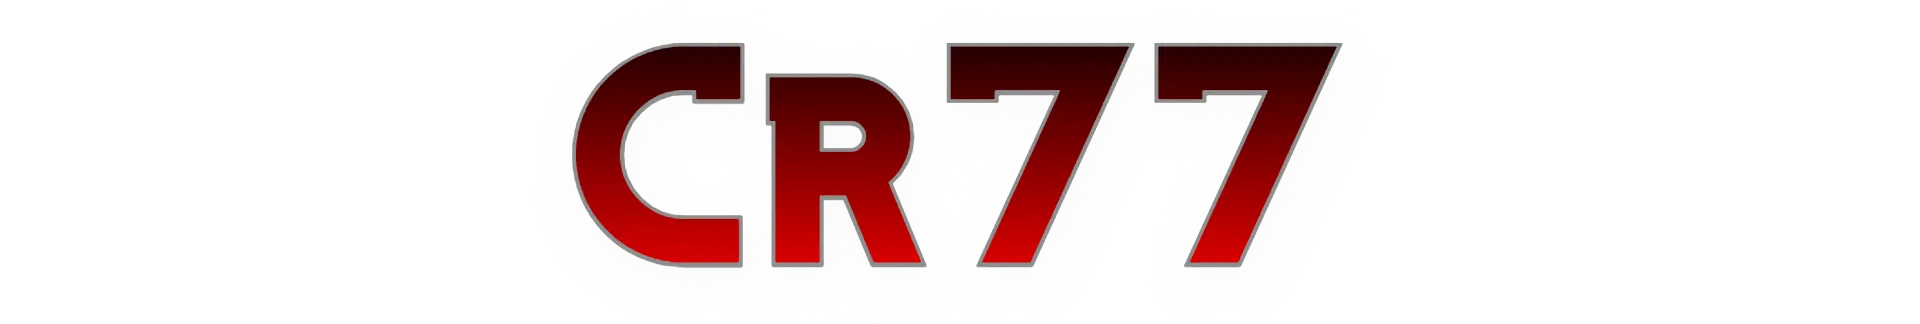 Cr77